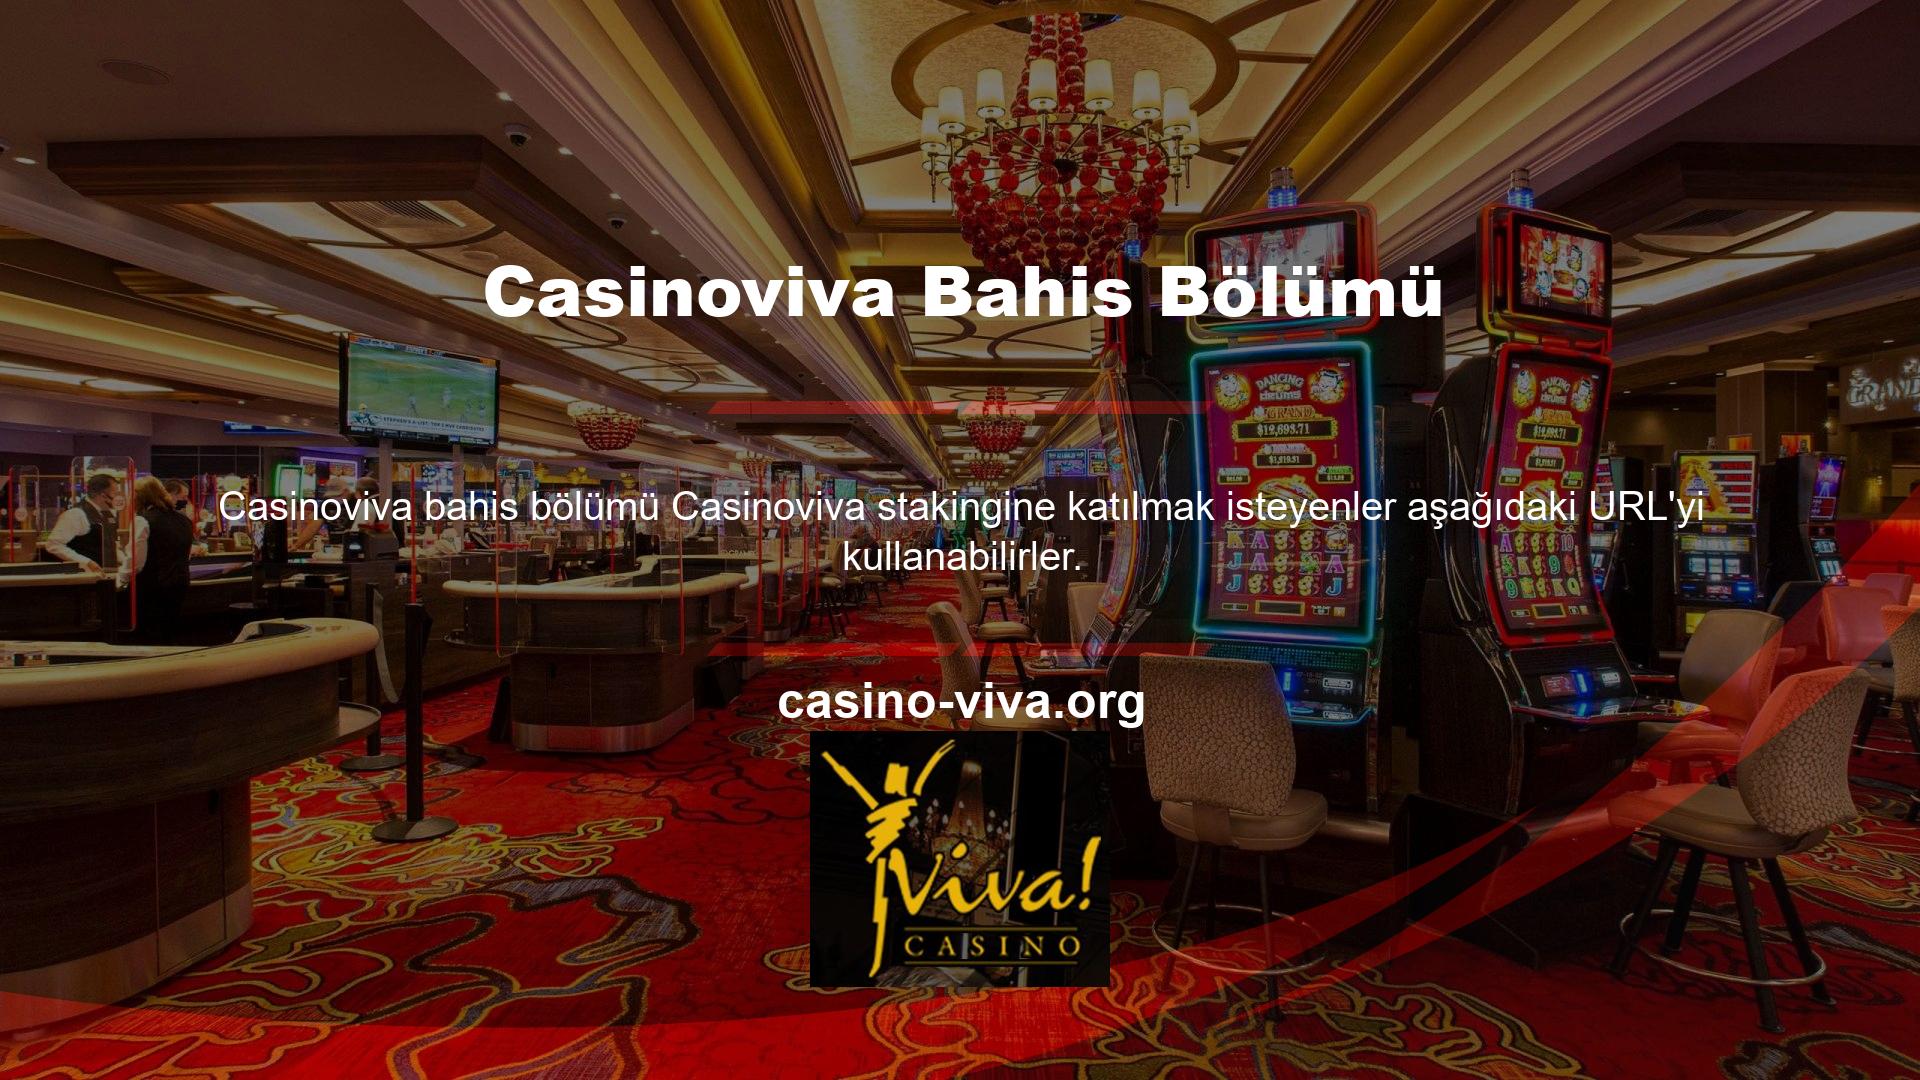 Casinoviva, hızlı kazanabileceğiniz ve kazancınızı hızlı bir şekilde çekebileceğiniz en iyi ve en güvenilir bahis sitesidir